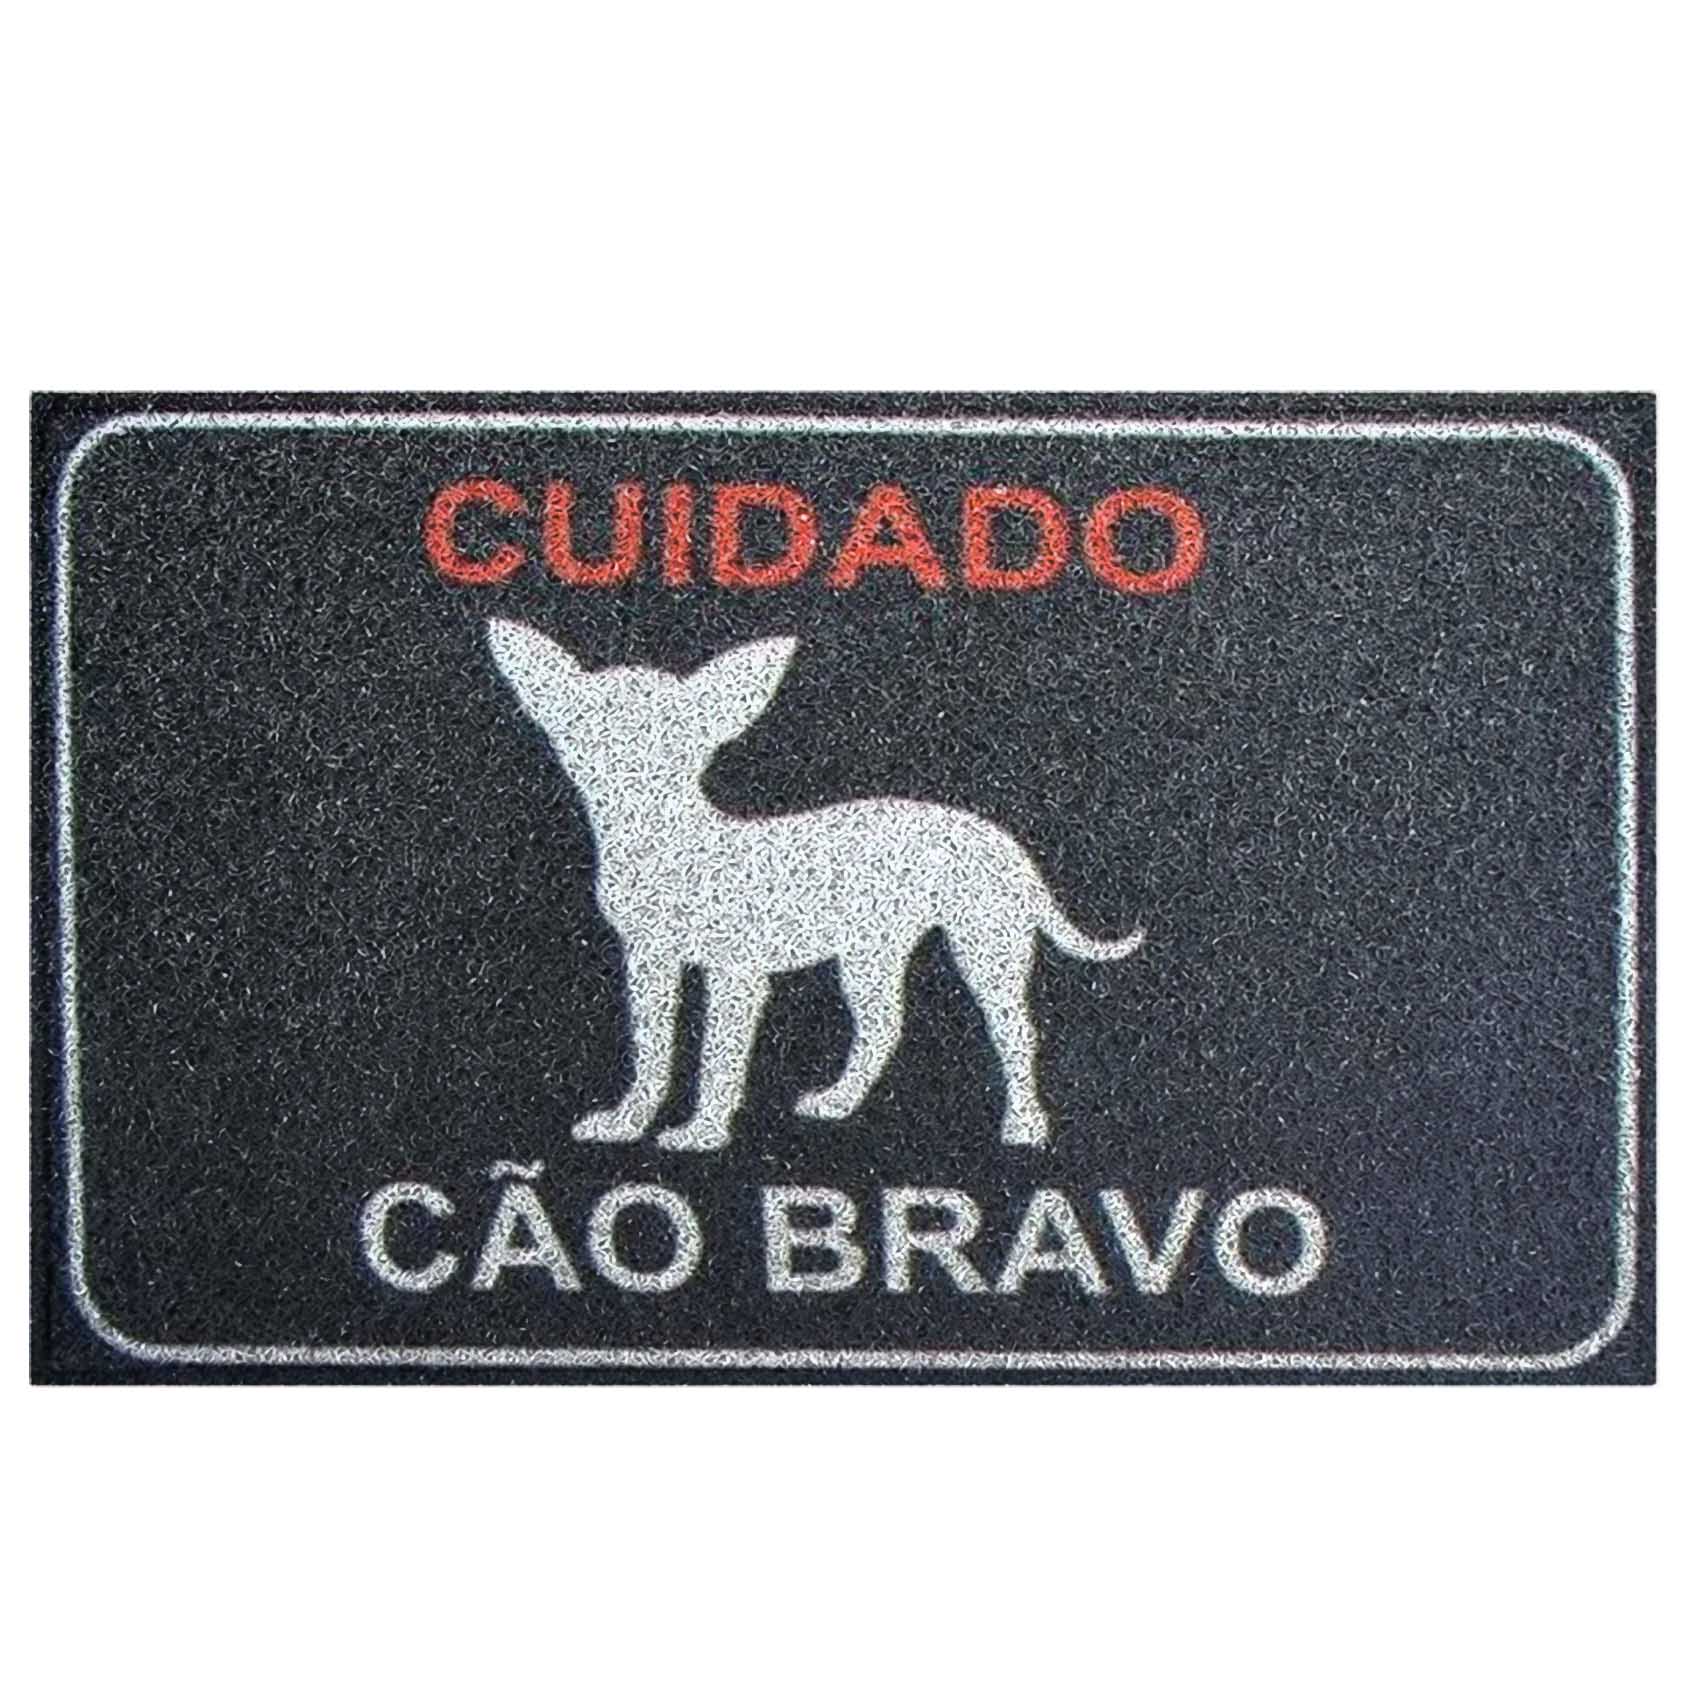 Pet Cuidado Cão Bravo